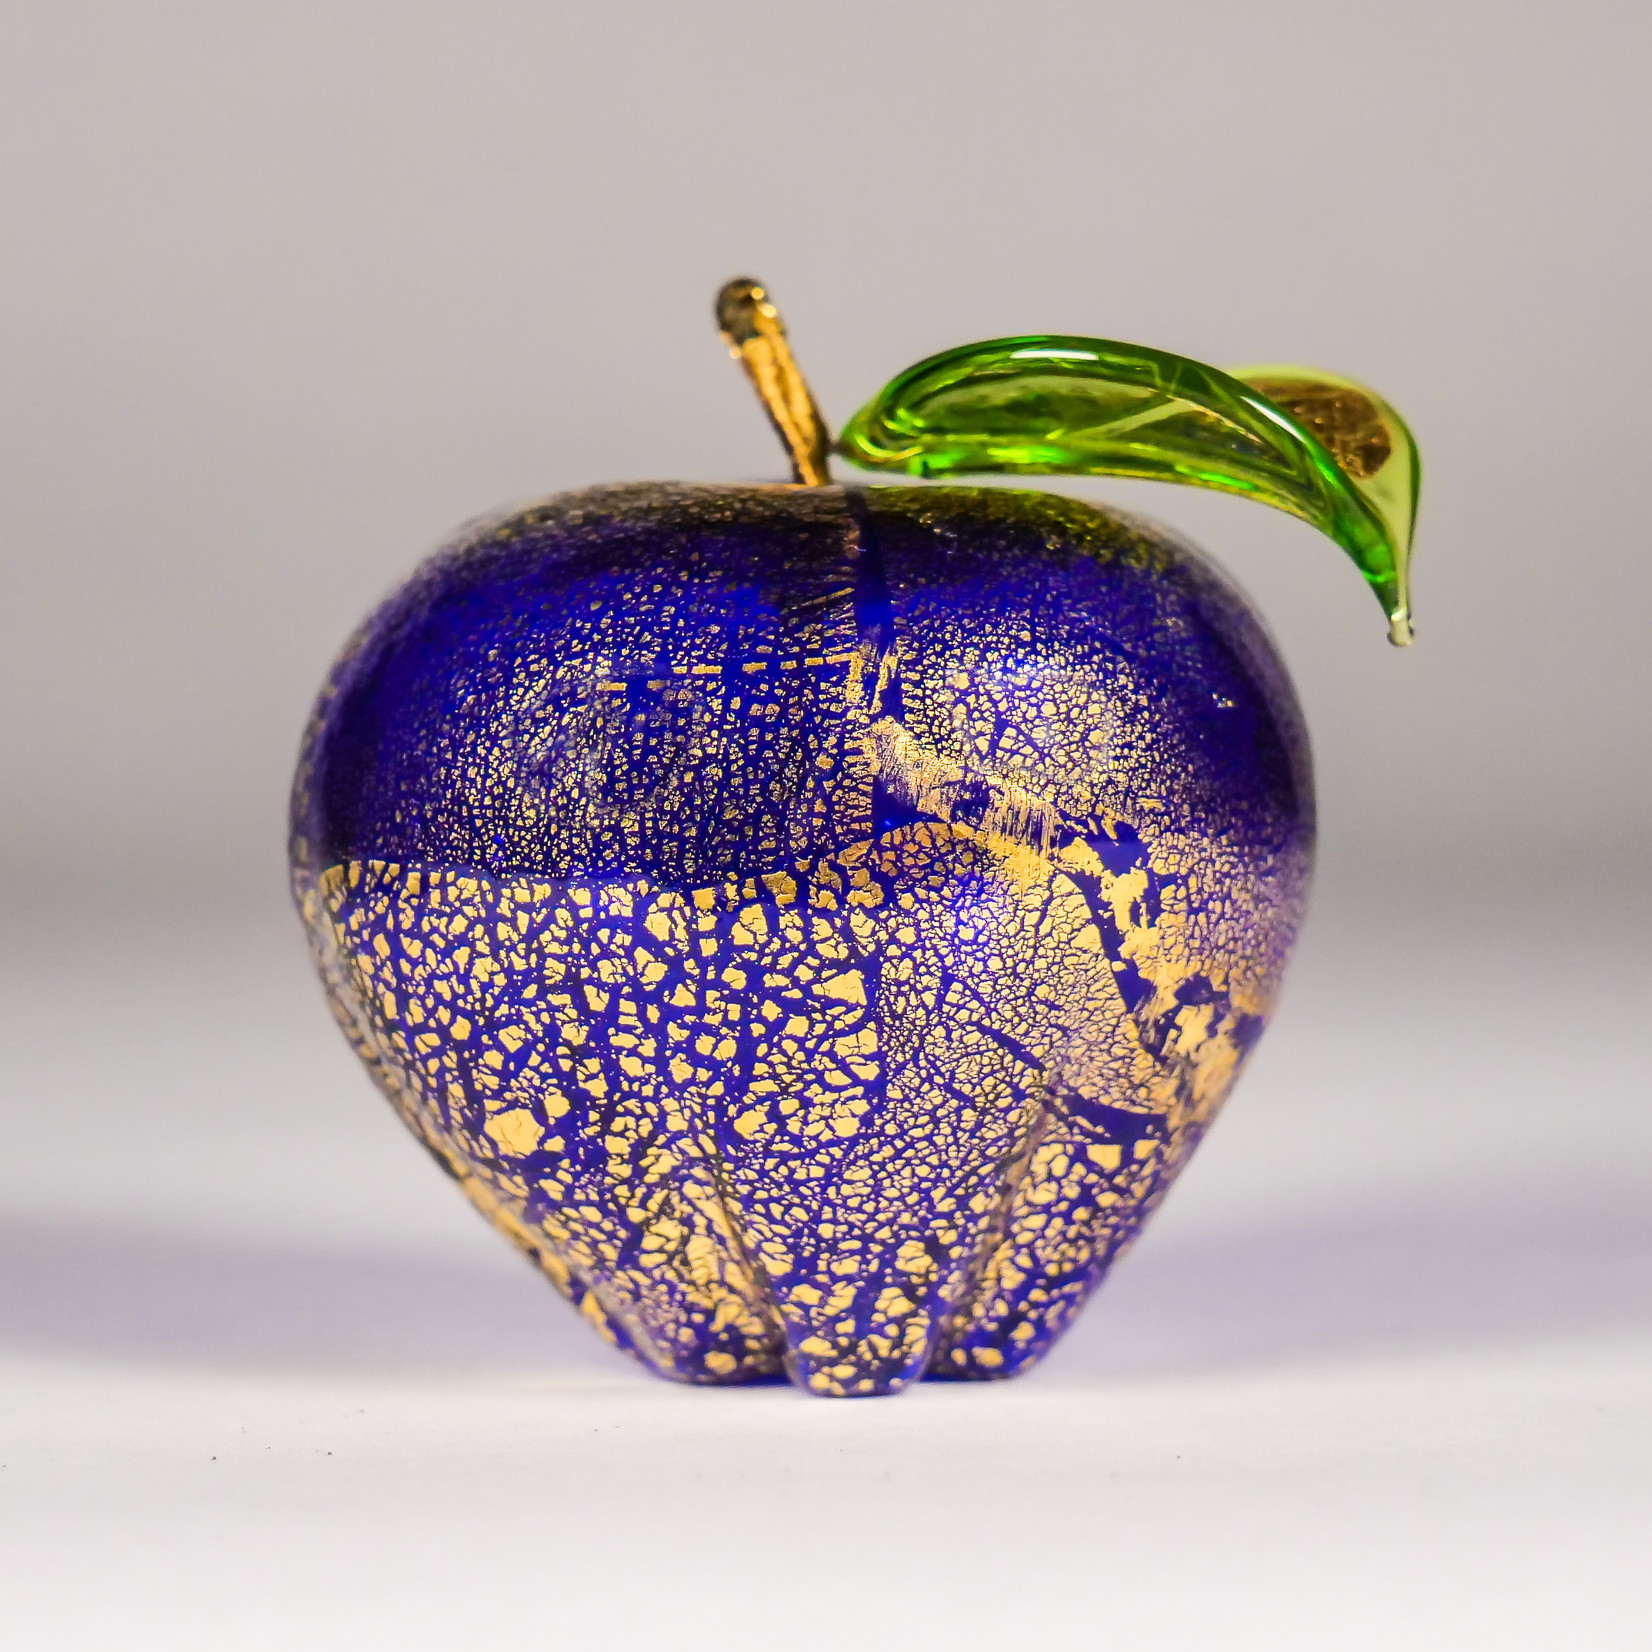 Via Graceffo Collection Via Graceffo: Murano Glass Apple